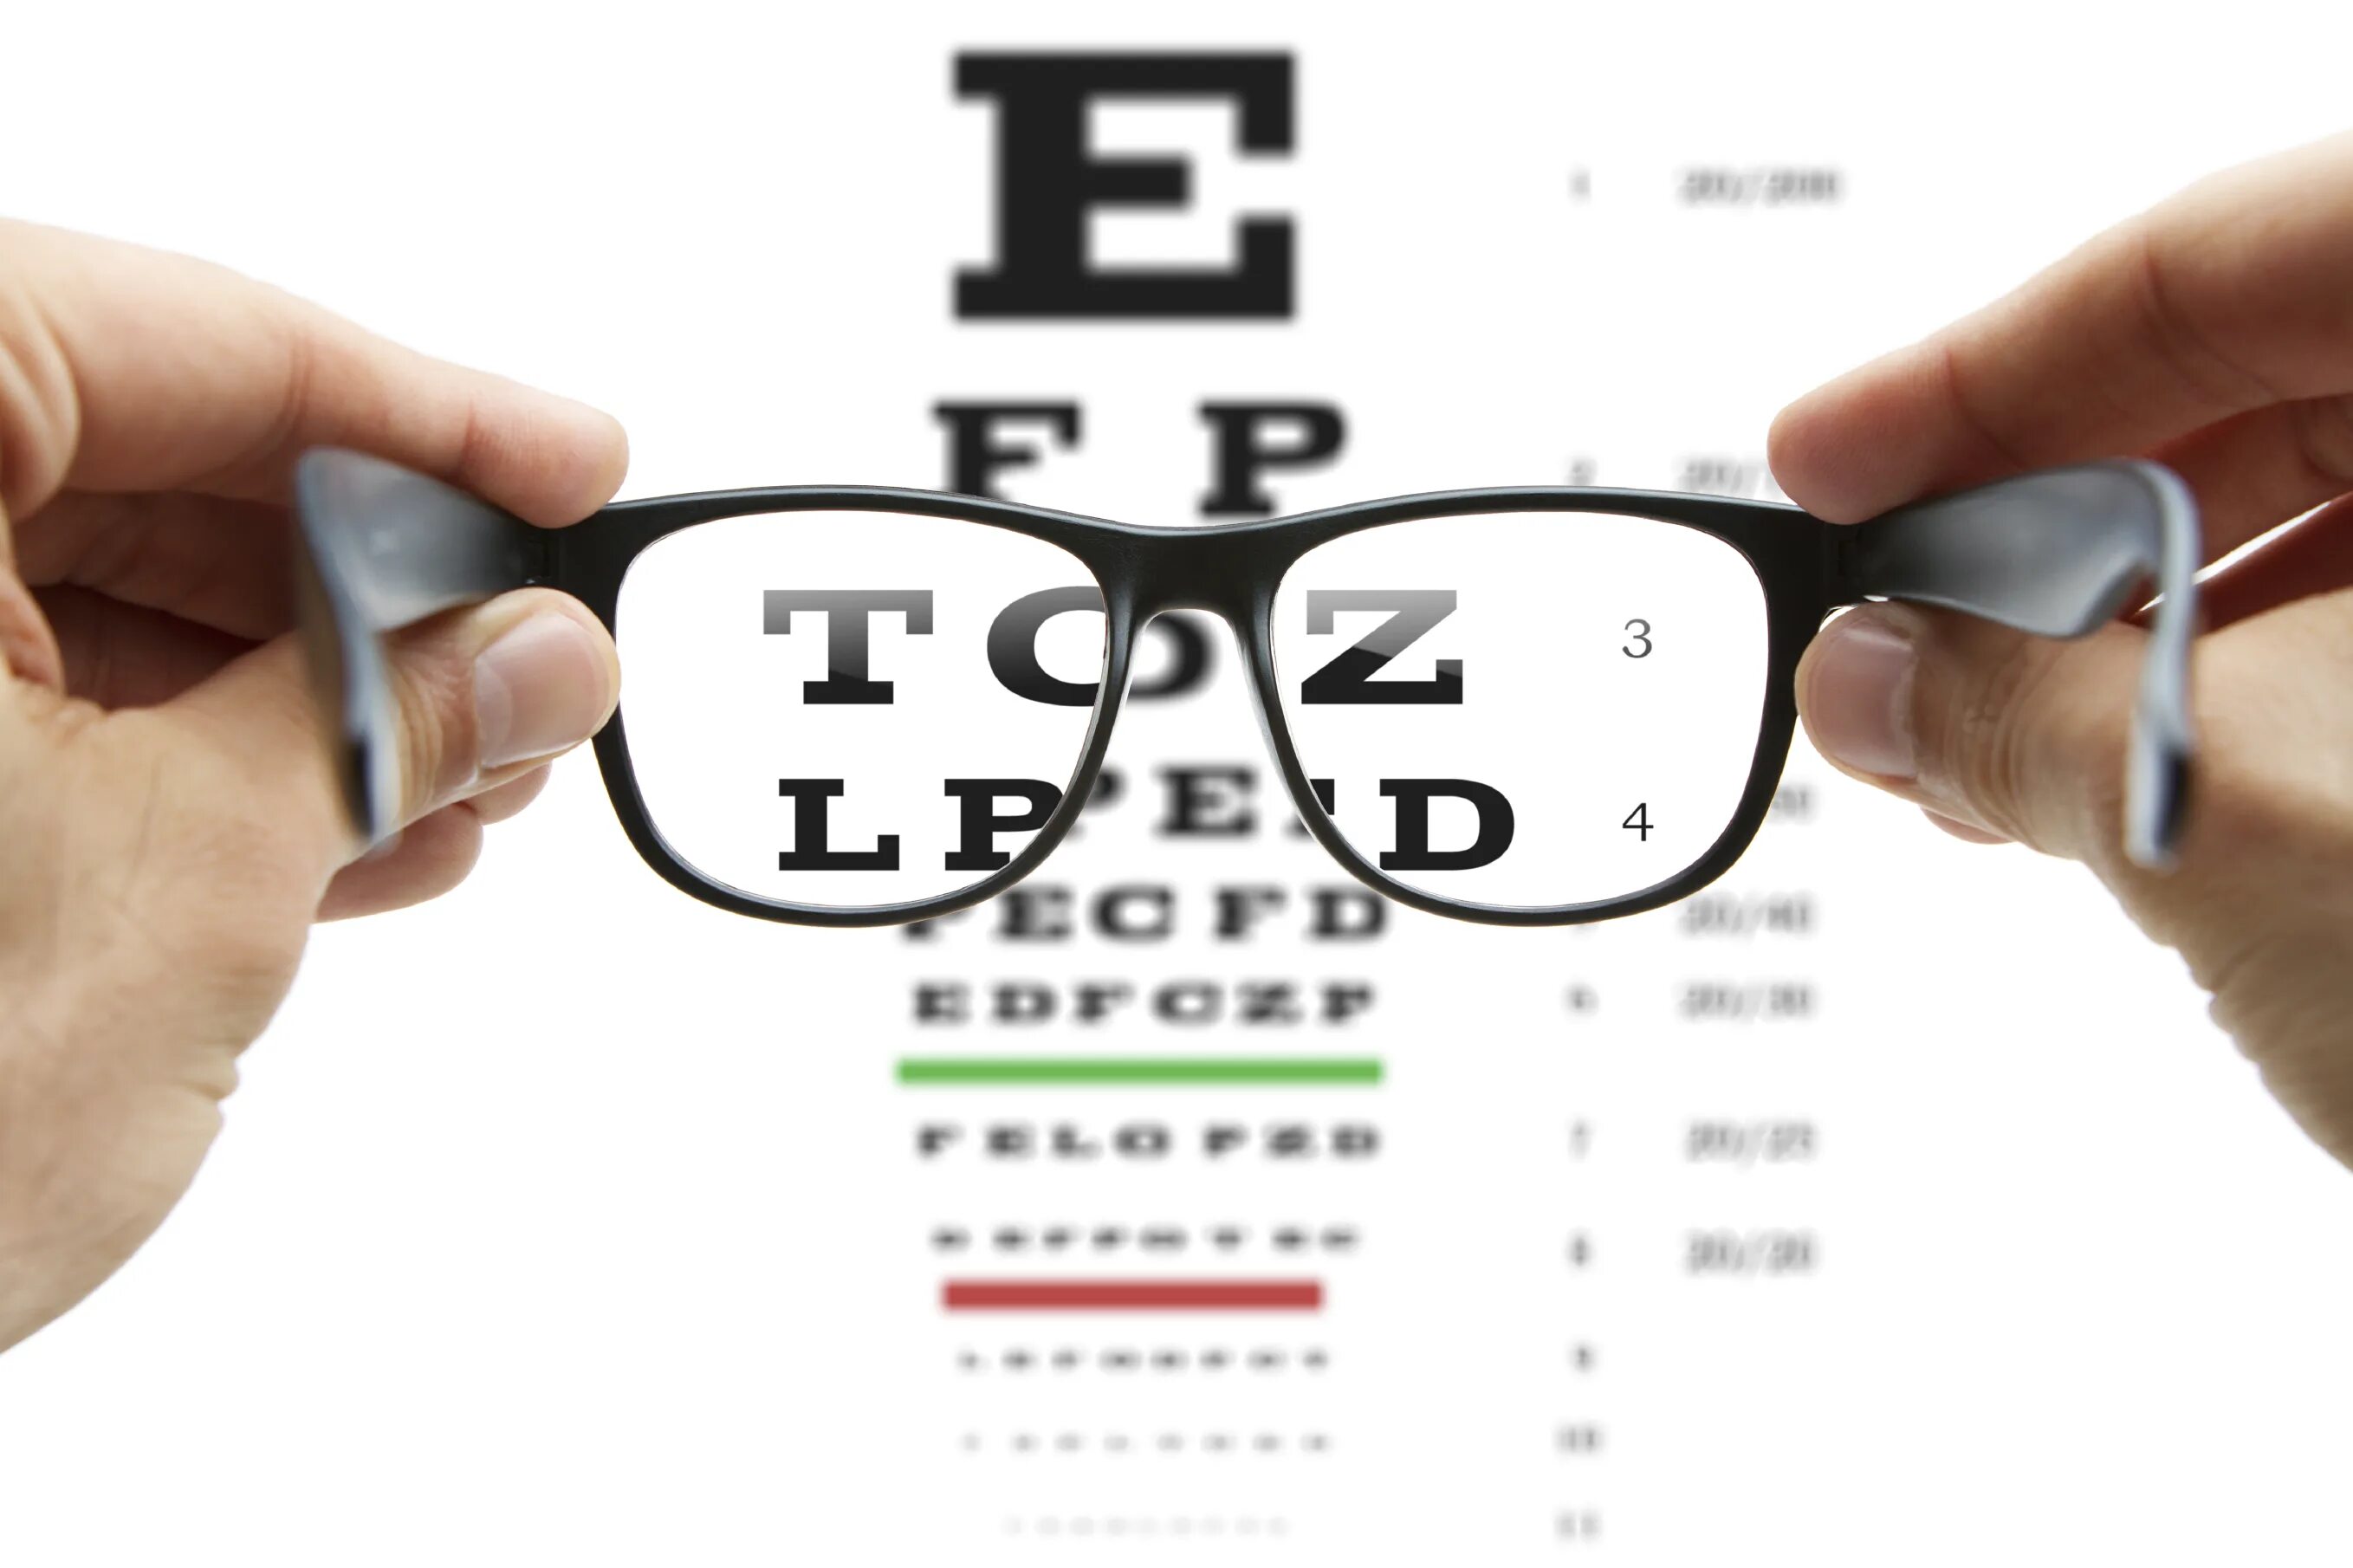 Оптика очки для проверки зрения. Картинки для зрения. Визитка оптики. Аппарат для проверки зрения. Оценка качества зрения